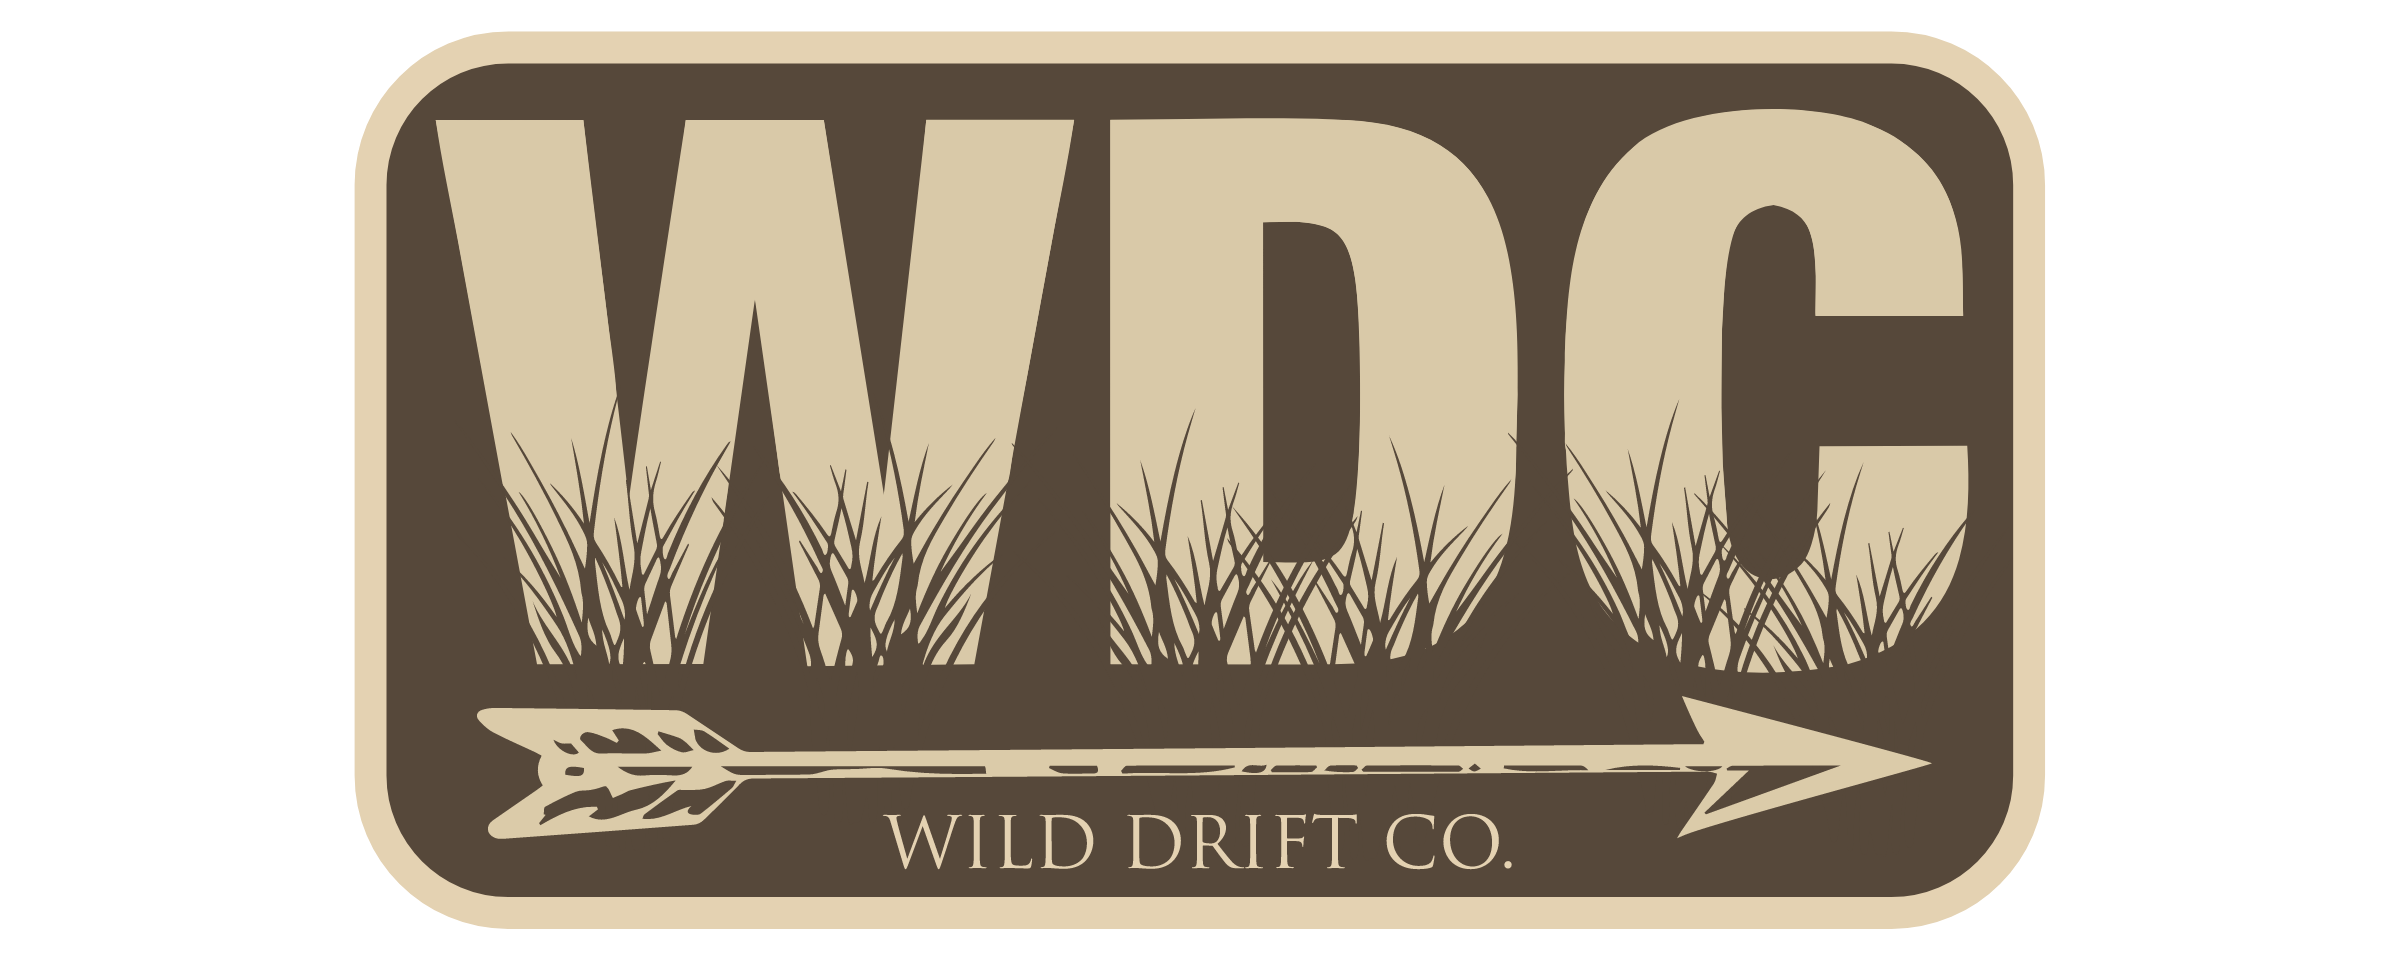 Wild Drift Co